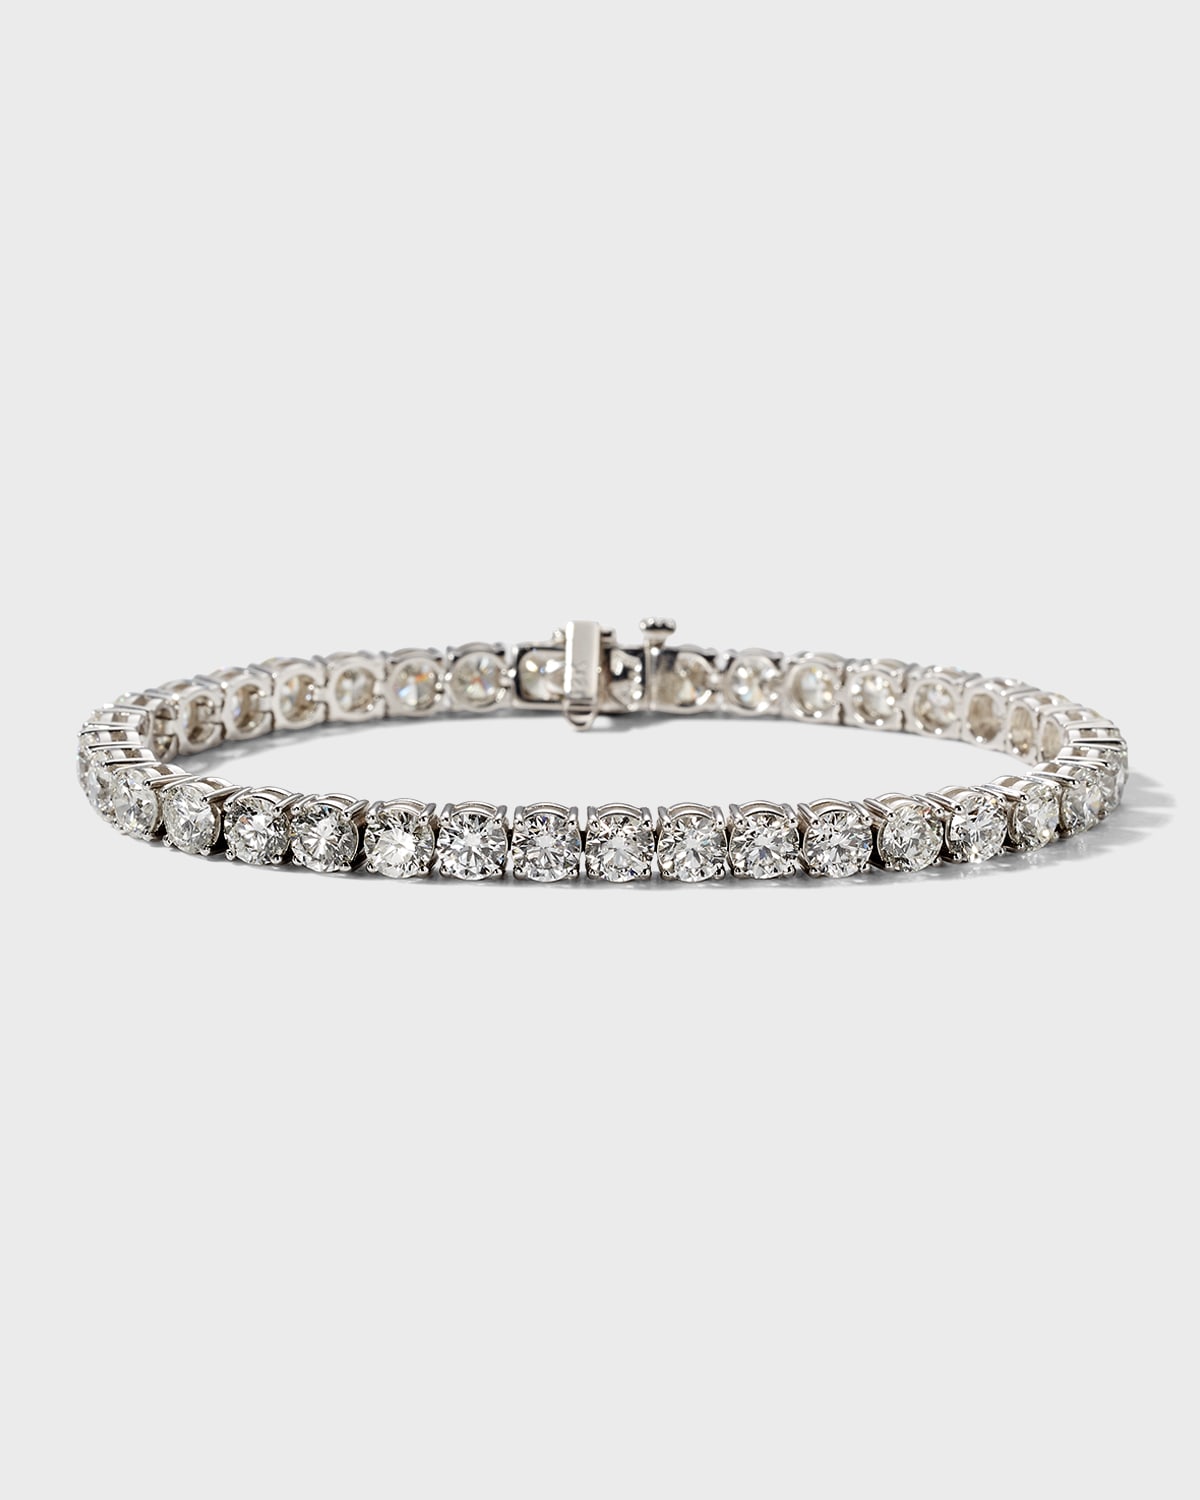 Neiman Marcus Diamonds 18k White Gold Diamond Tennis Bracelet, 14.43tcw